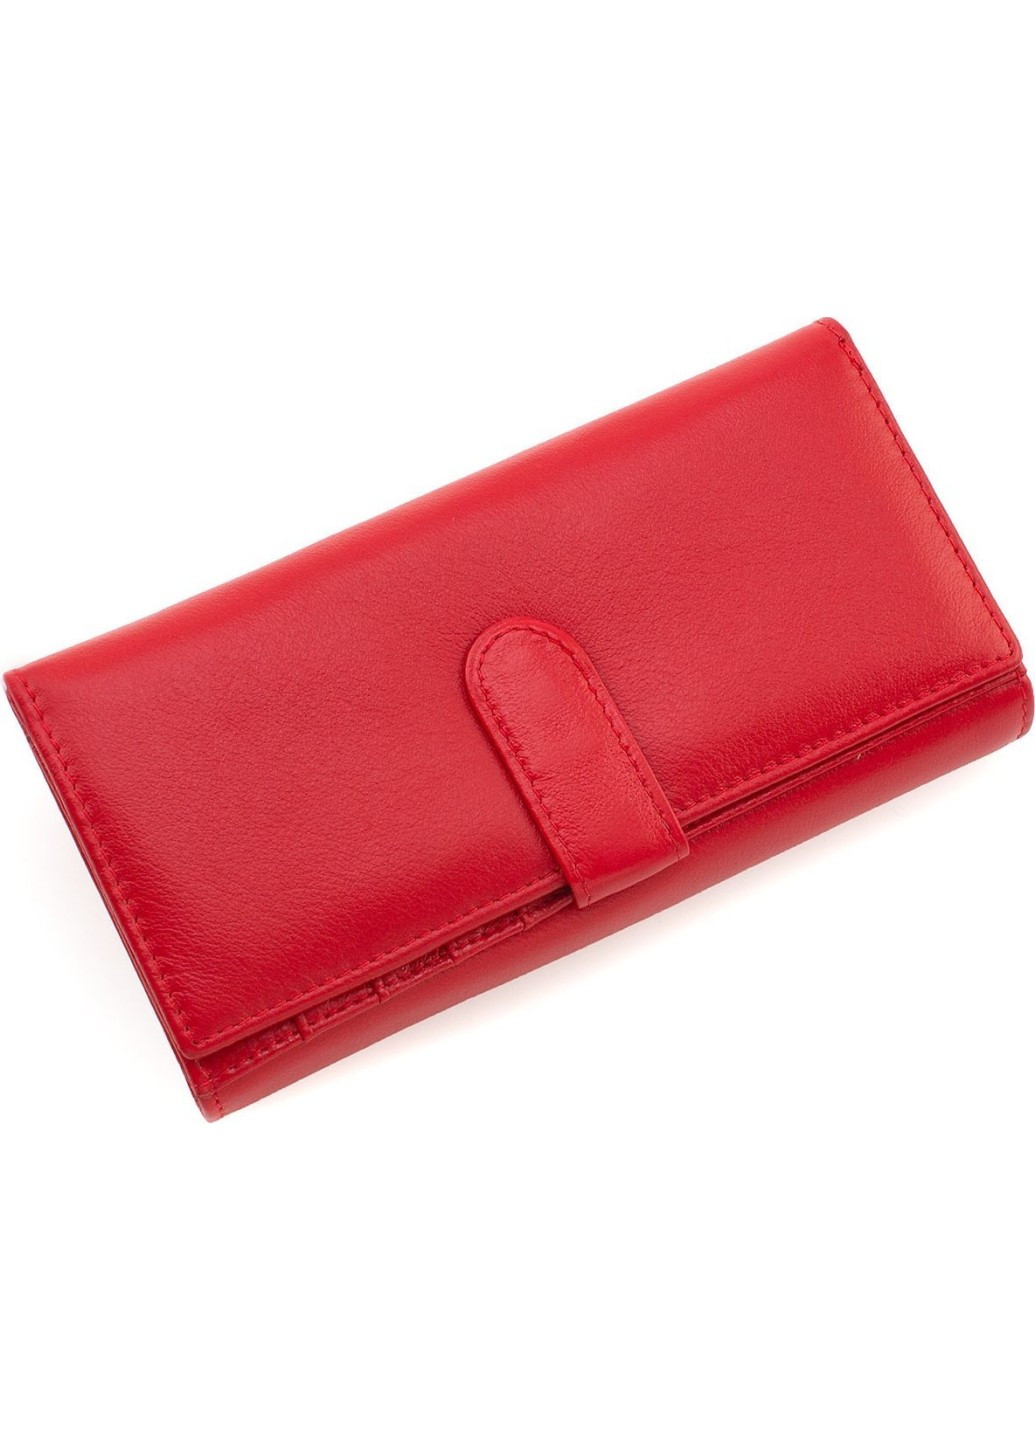 Женский кошелек из натуральной кожи на два отделения 18,5х9 MA246-Red(17180) красный Marco Coverna (259752470)